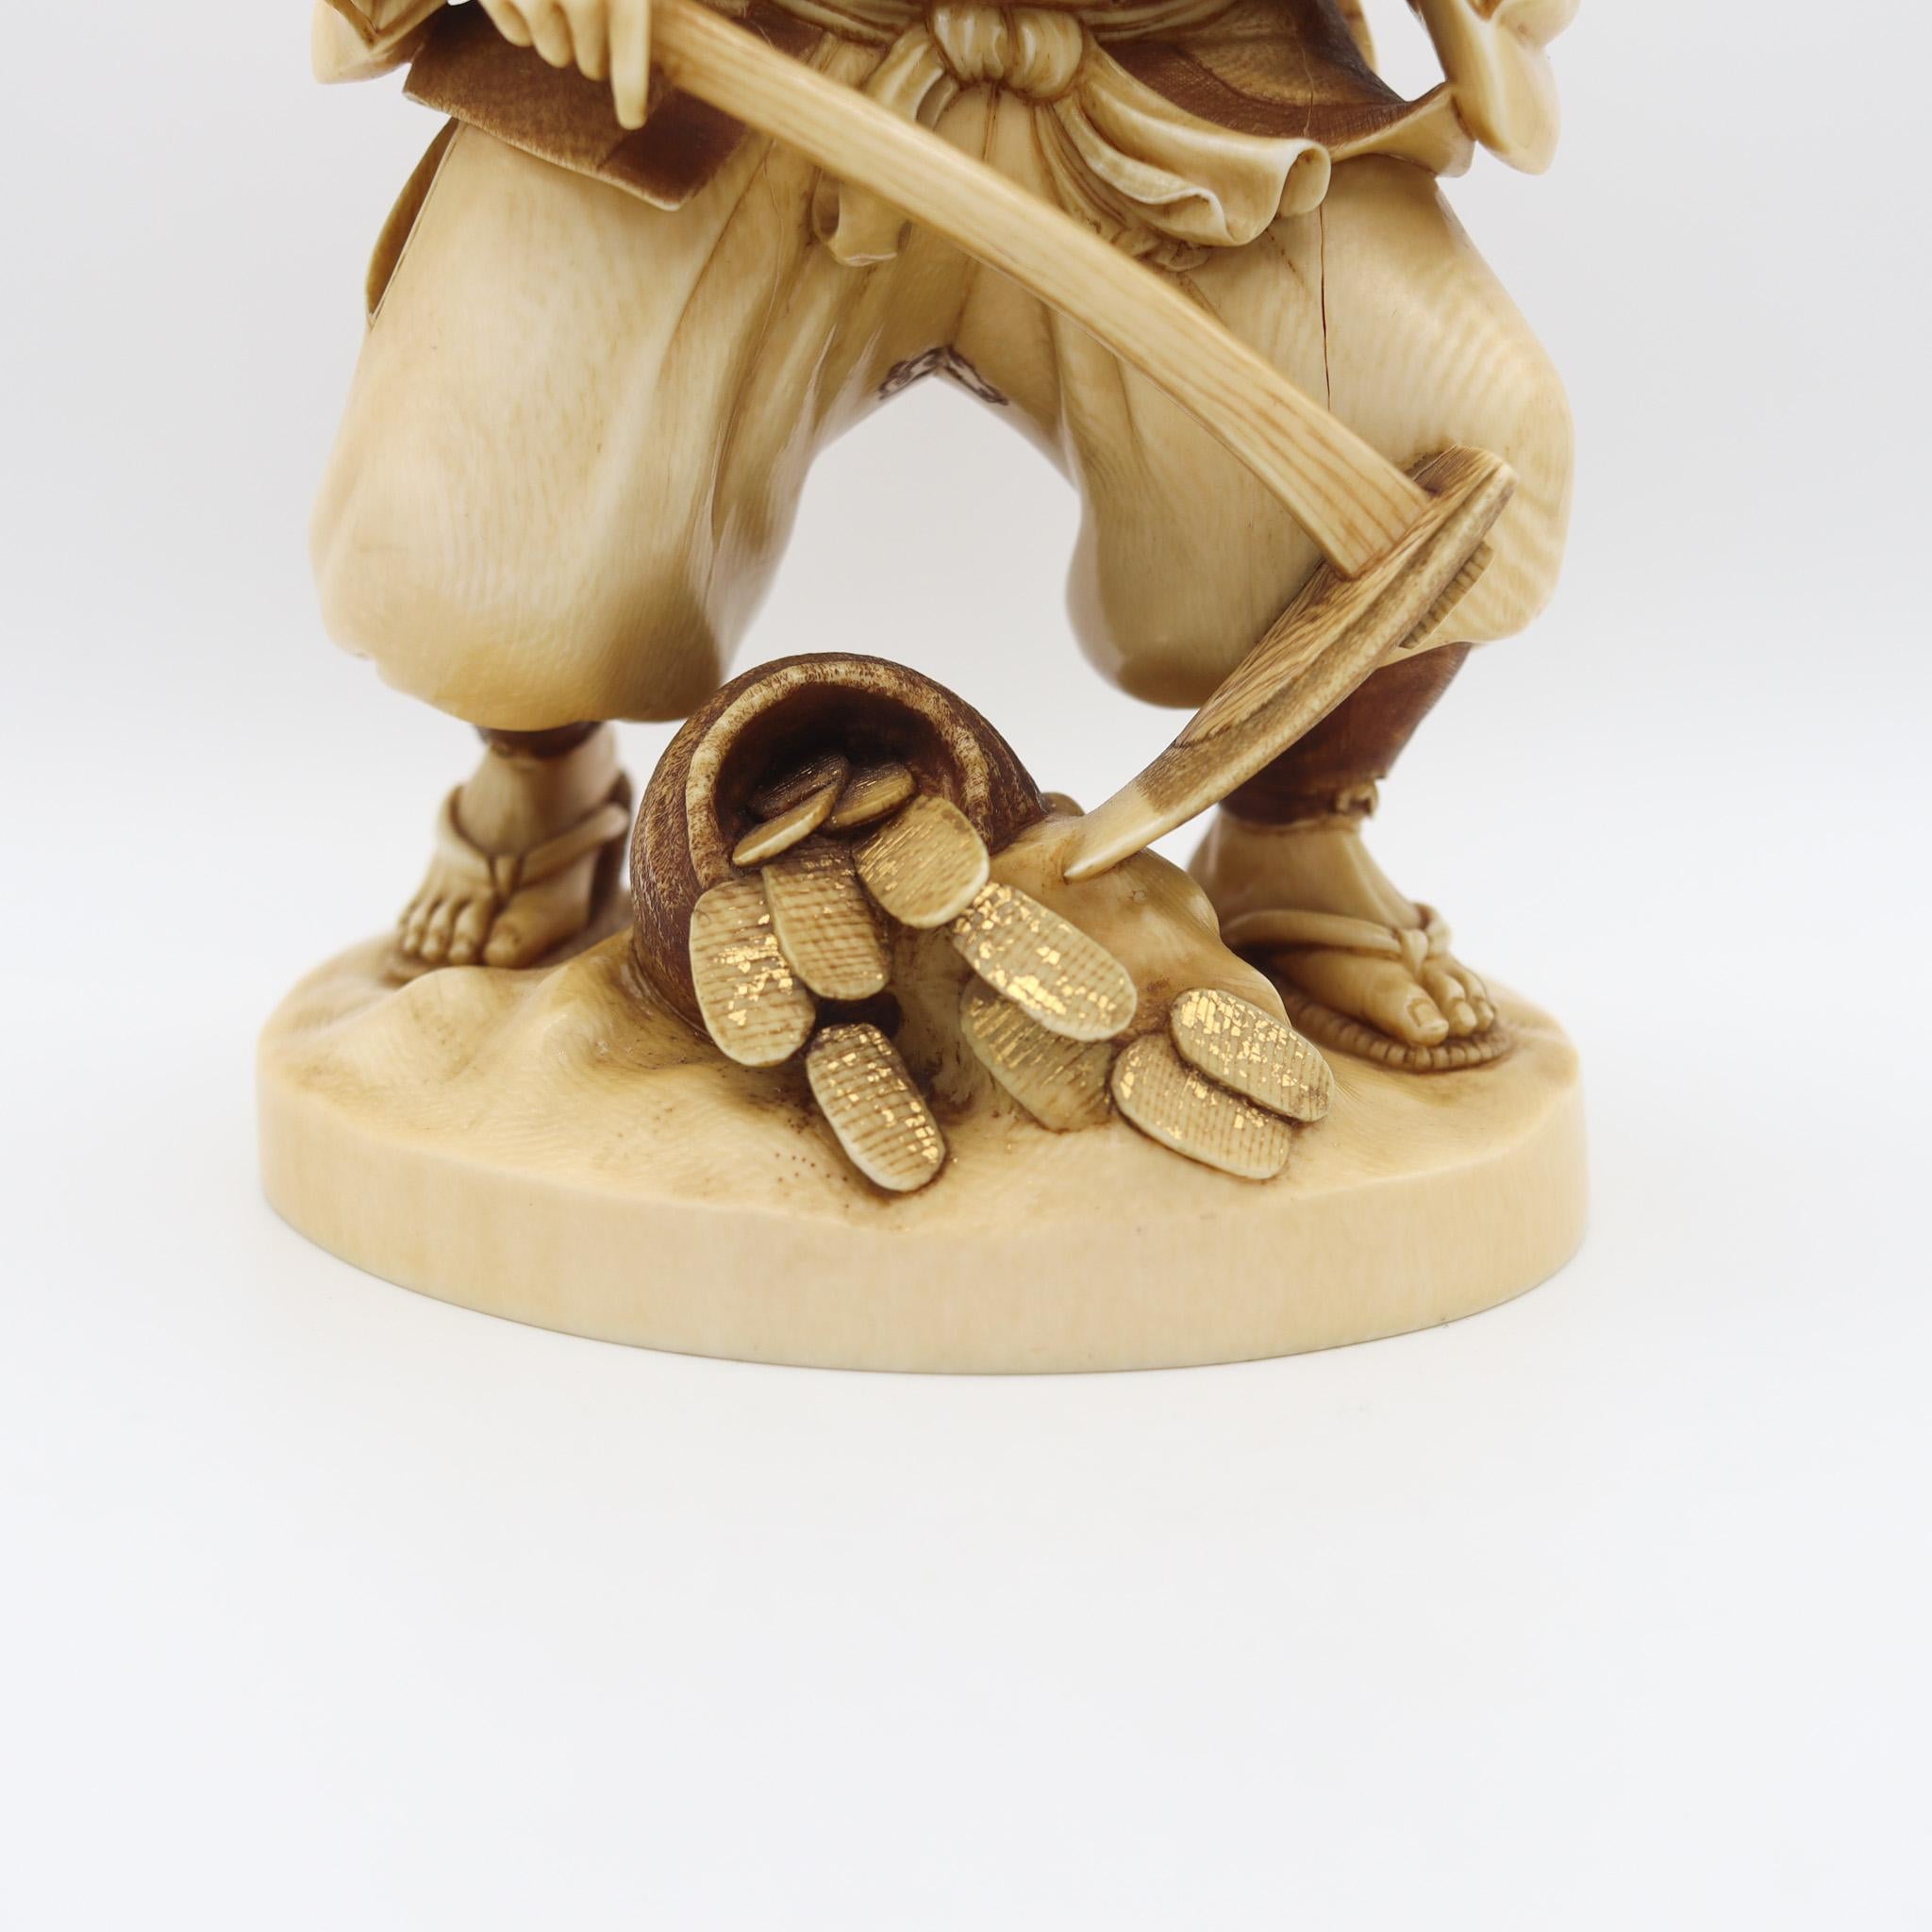 Sculpture japonaise de Daikoku.

Magnifique sculpture du dieu de la fortune Daikoku, réalisée au Japon pendant la période Meiji, vers 1890. La sculpture représente le dieu japonais de la bonne fortune, Daikoku, personnifié sous la forme d'un fermier